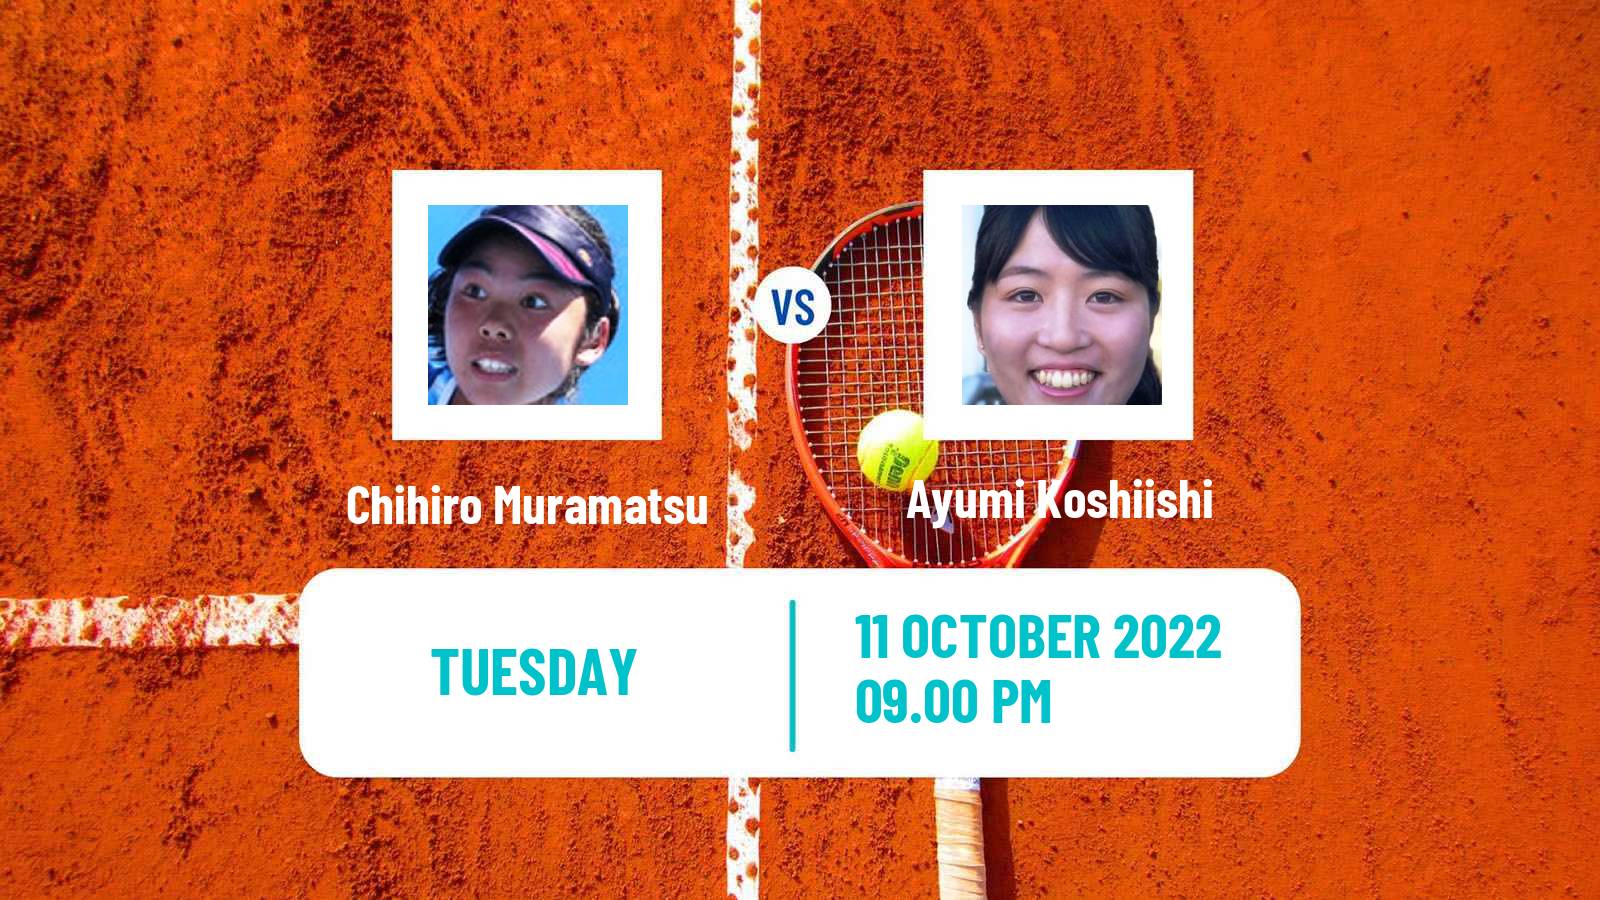 Tennis ITF Tournaments Chihiro Muramatsu - Ayumi Koshiishi